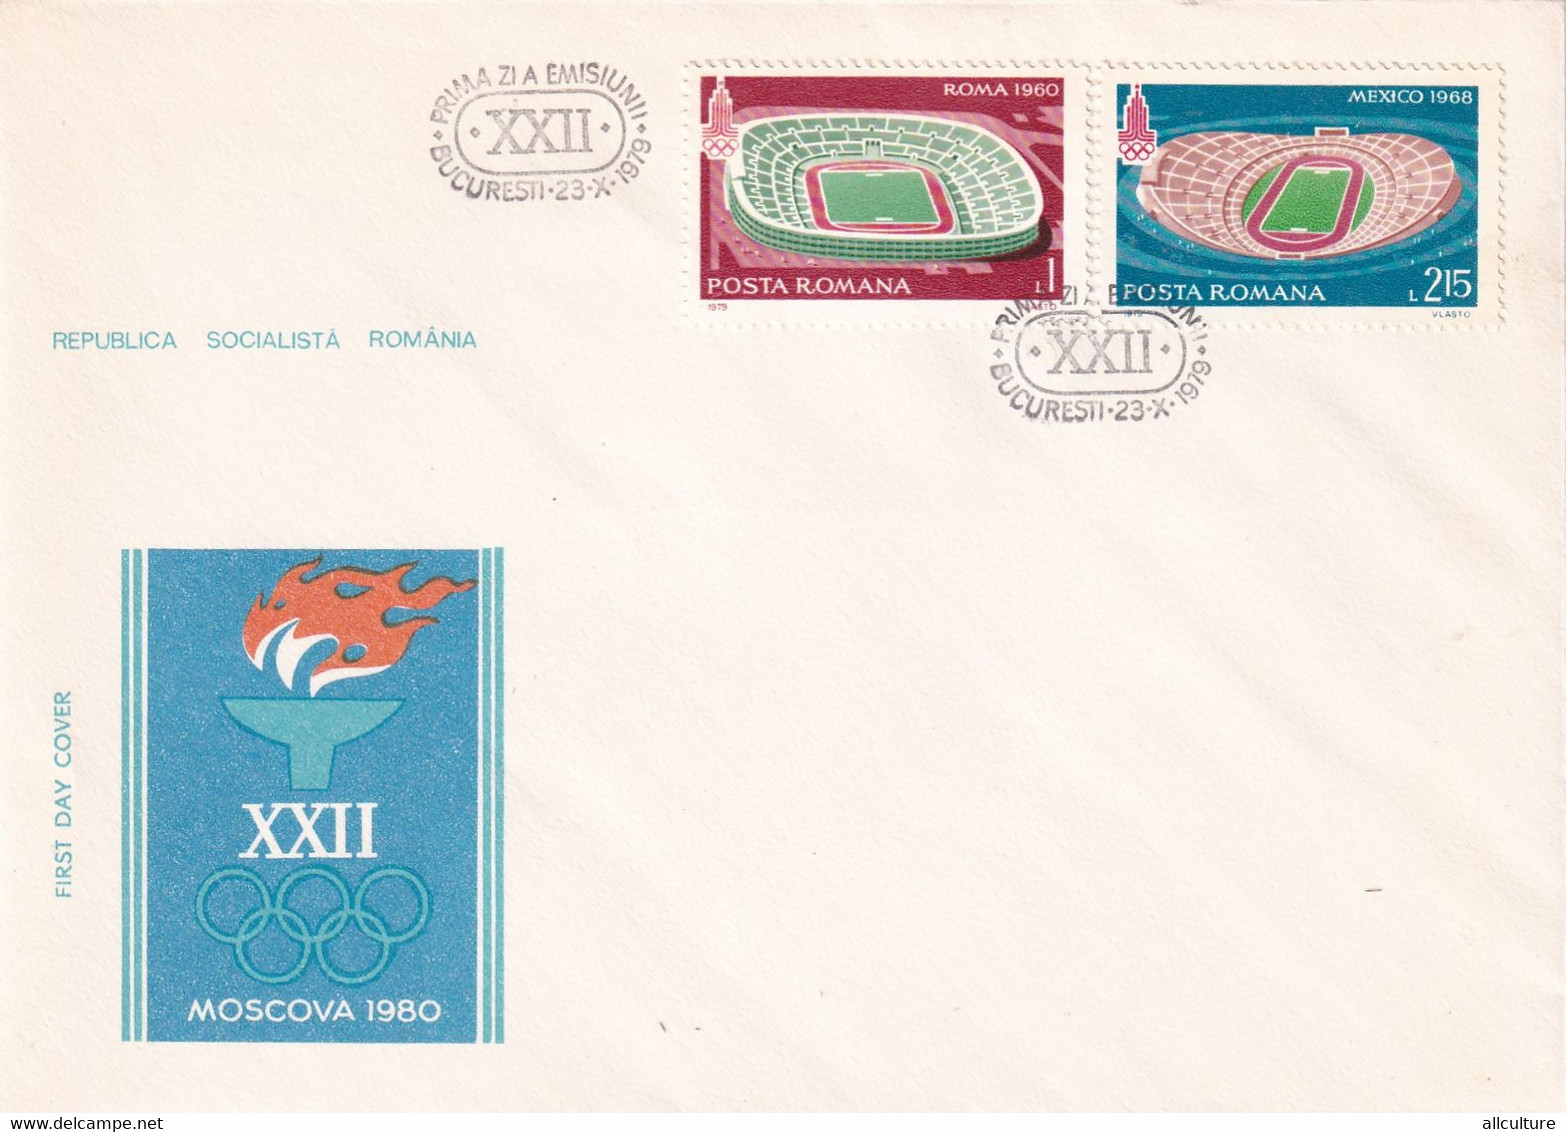 A2753-  Jocurile Olimpice Moscova URSS 1980, Republica Socialista Romania, Bucuresti 1979  4 Covers FDC - Ete 1980: Moscou